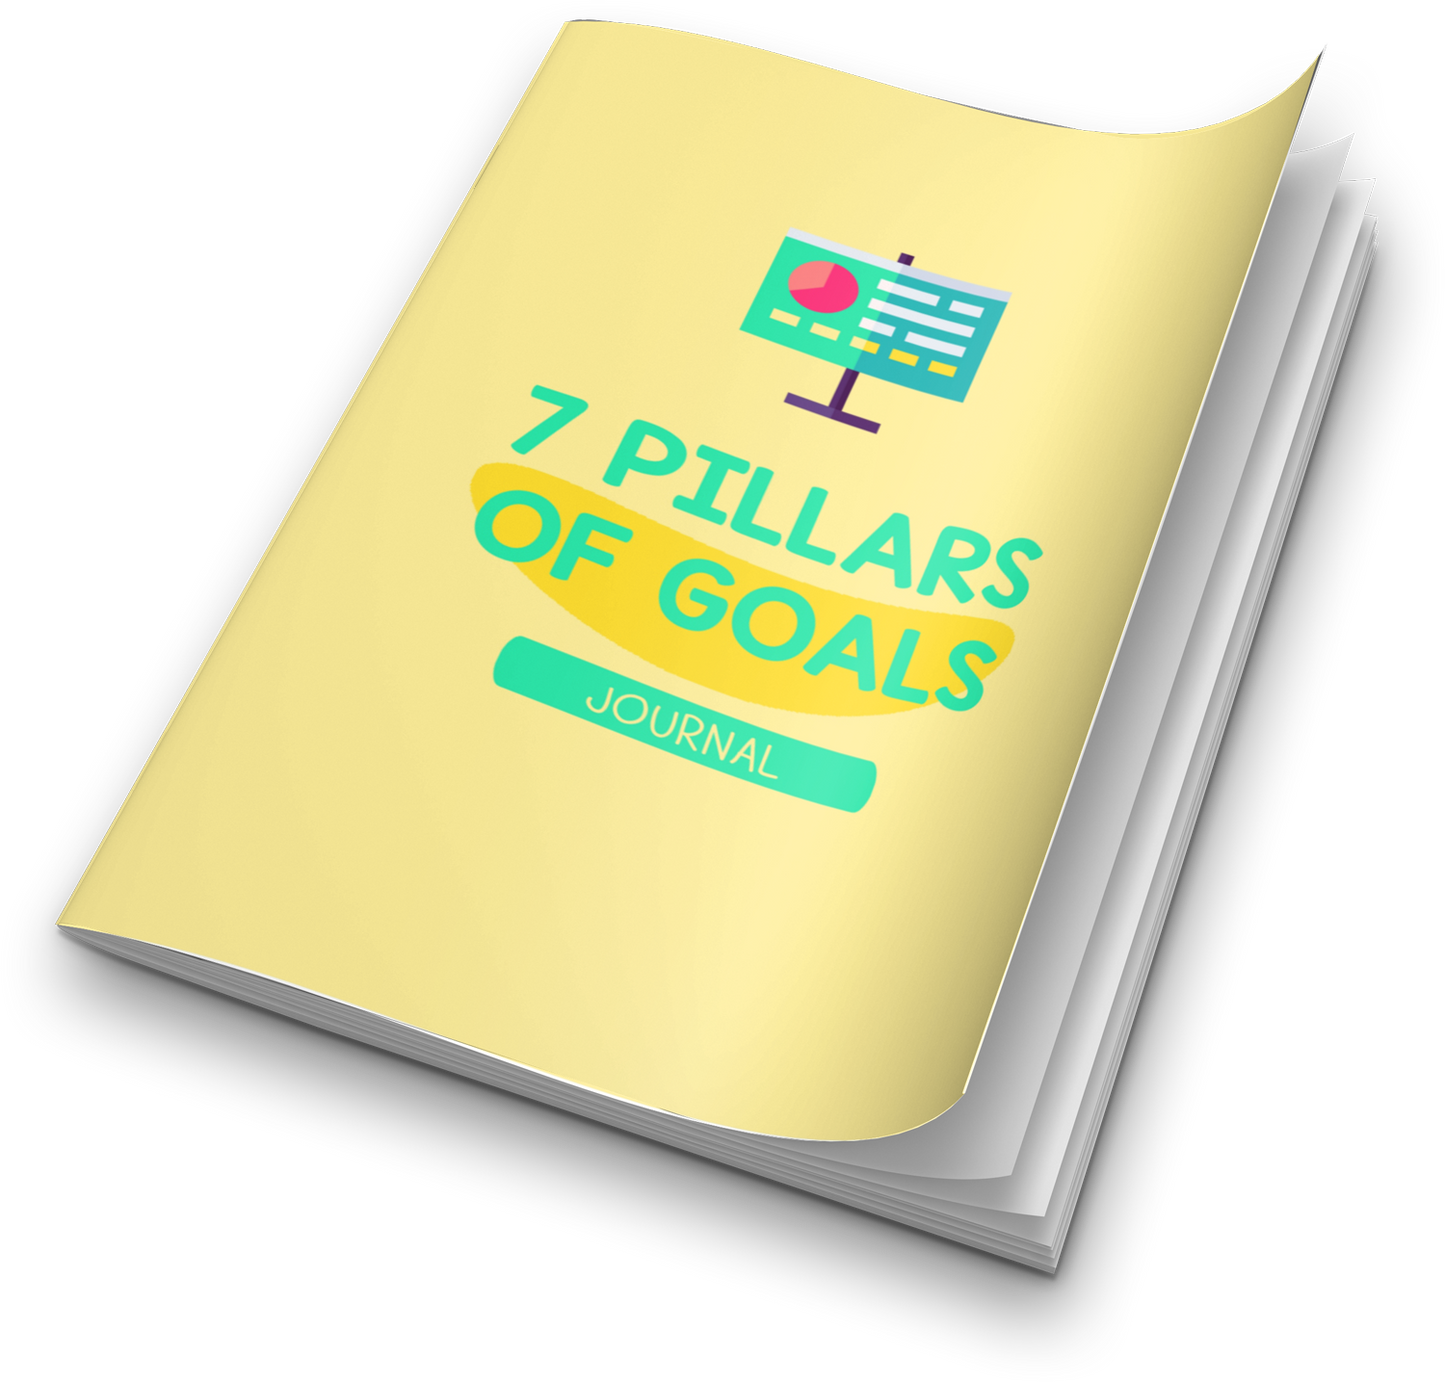 7 pillars of goals plr journal